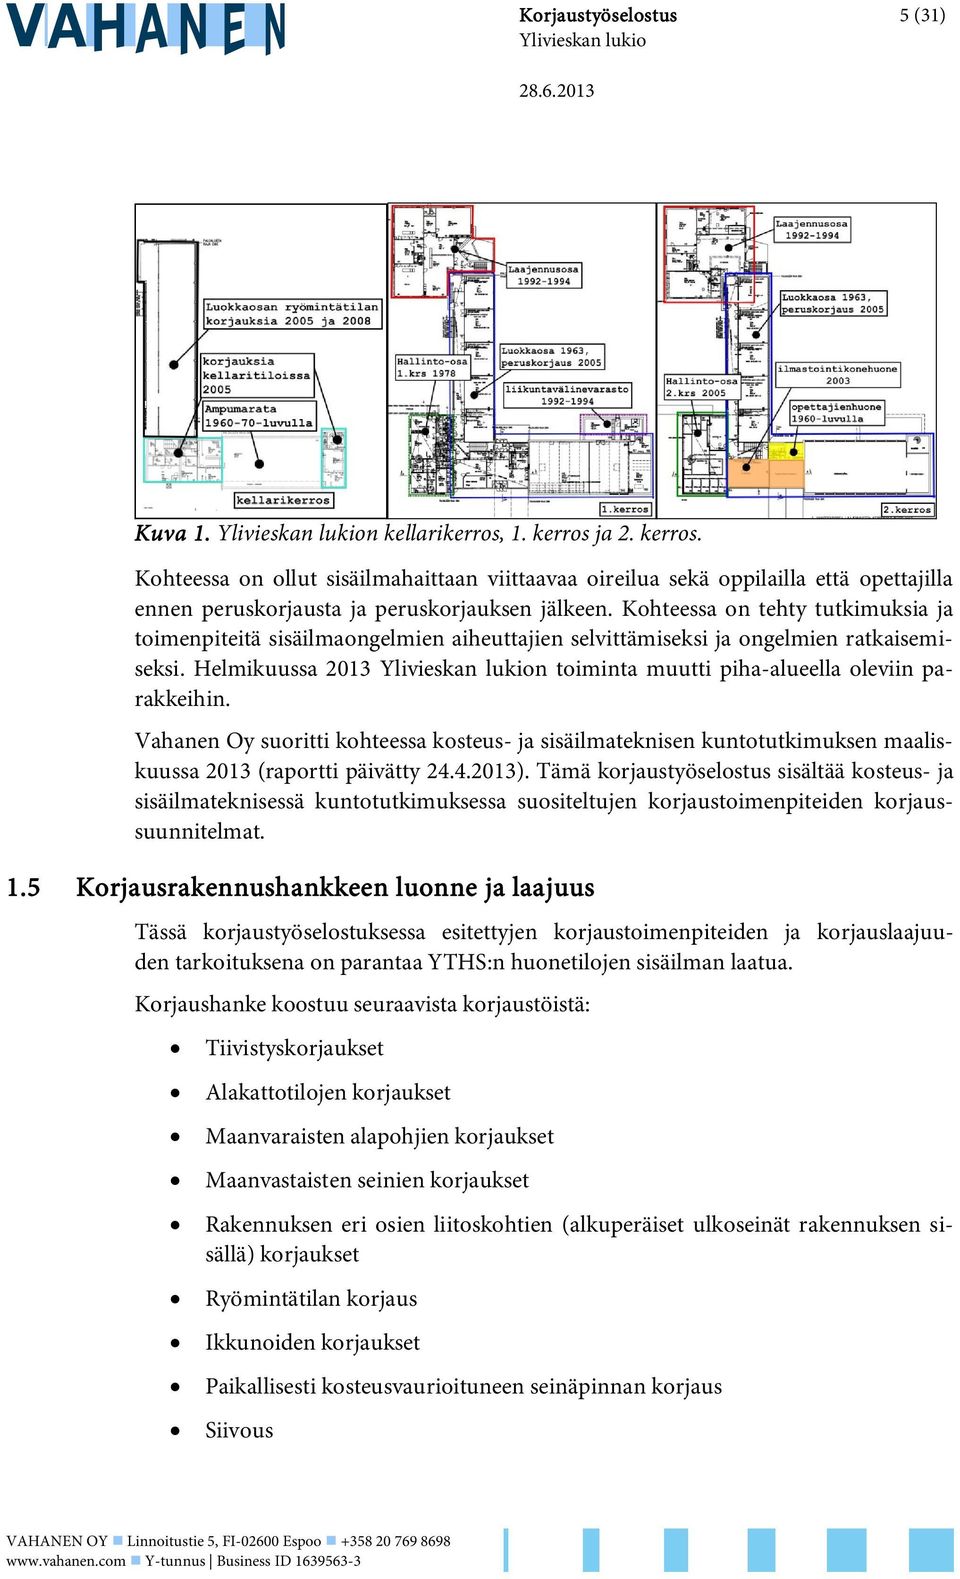 Vahanen Oy suoritti kohteessa kosteus- ja sisäilmateknisen kuntotutkimuksen maaliskuussa 2013 (raportti päivätty 24.4.2013).